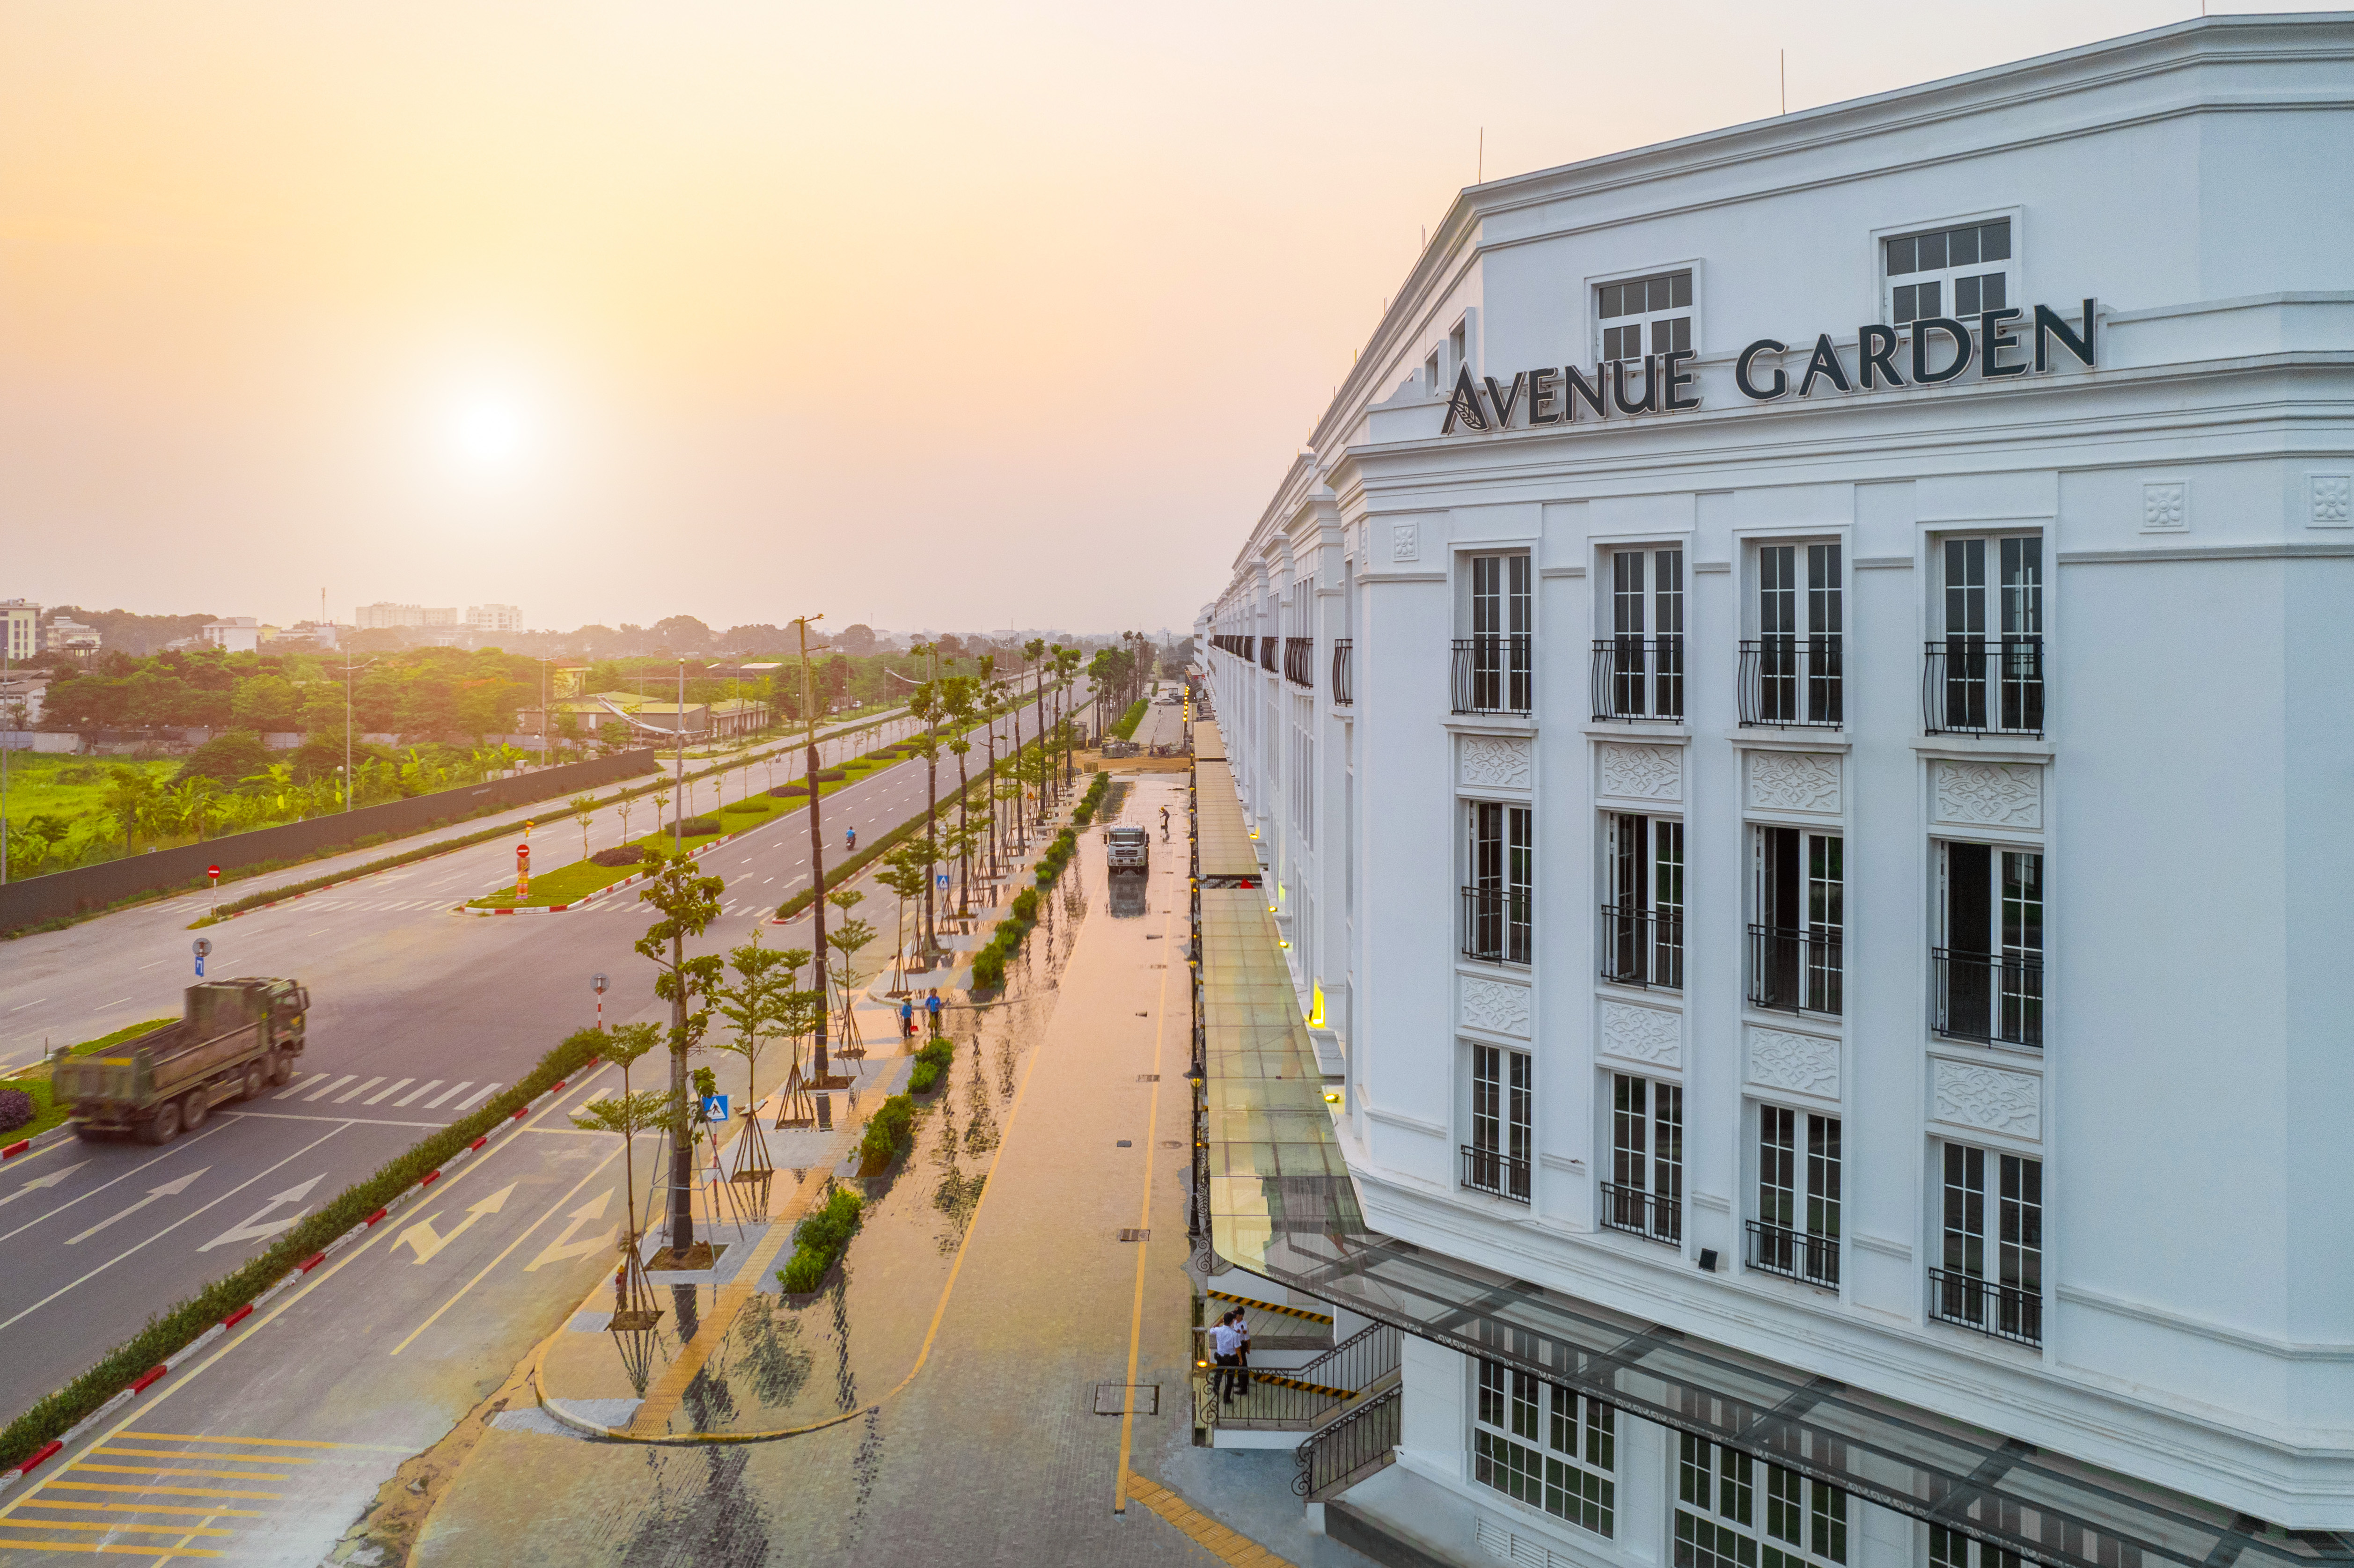 Đẳng cấp và lợi thế đặc biệt tại Avenue Garden tạo nên sức hút khách hàng tại thủ đô Hà Nội